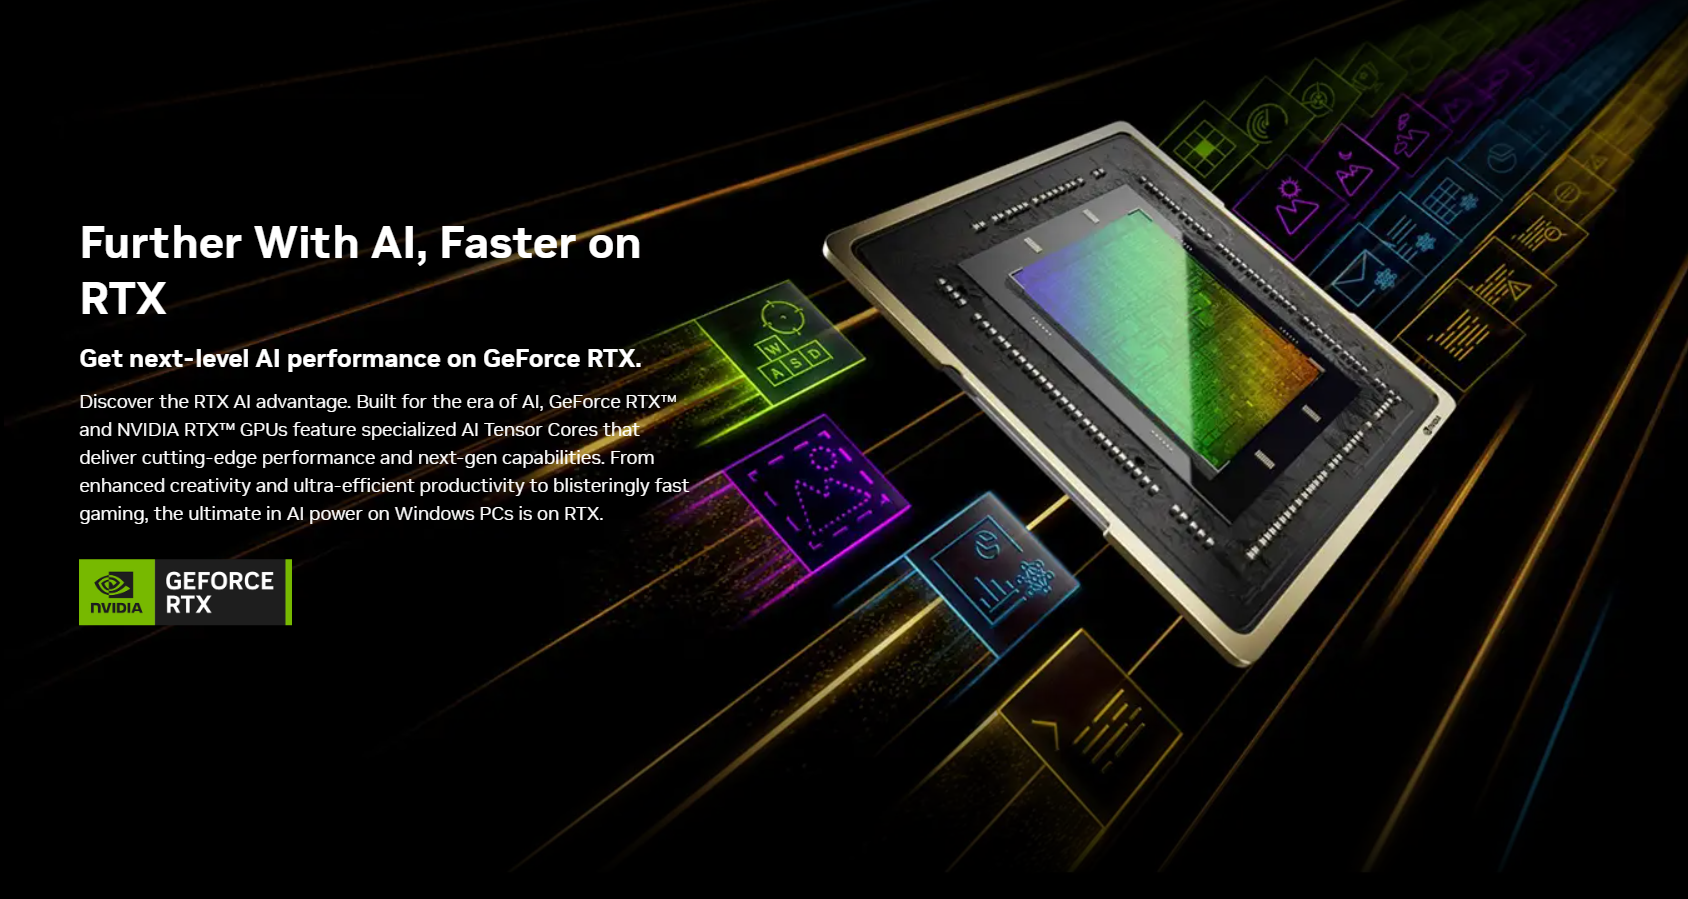 ASUS GeForce PROART RTX 4060 OC 8GB